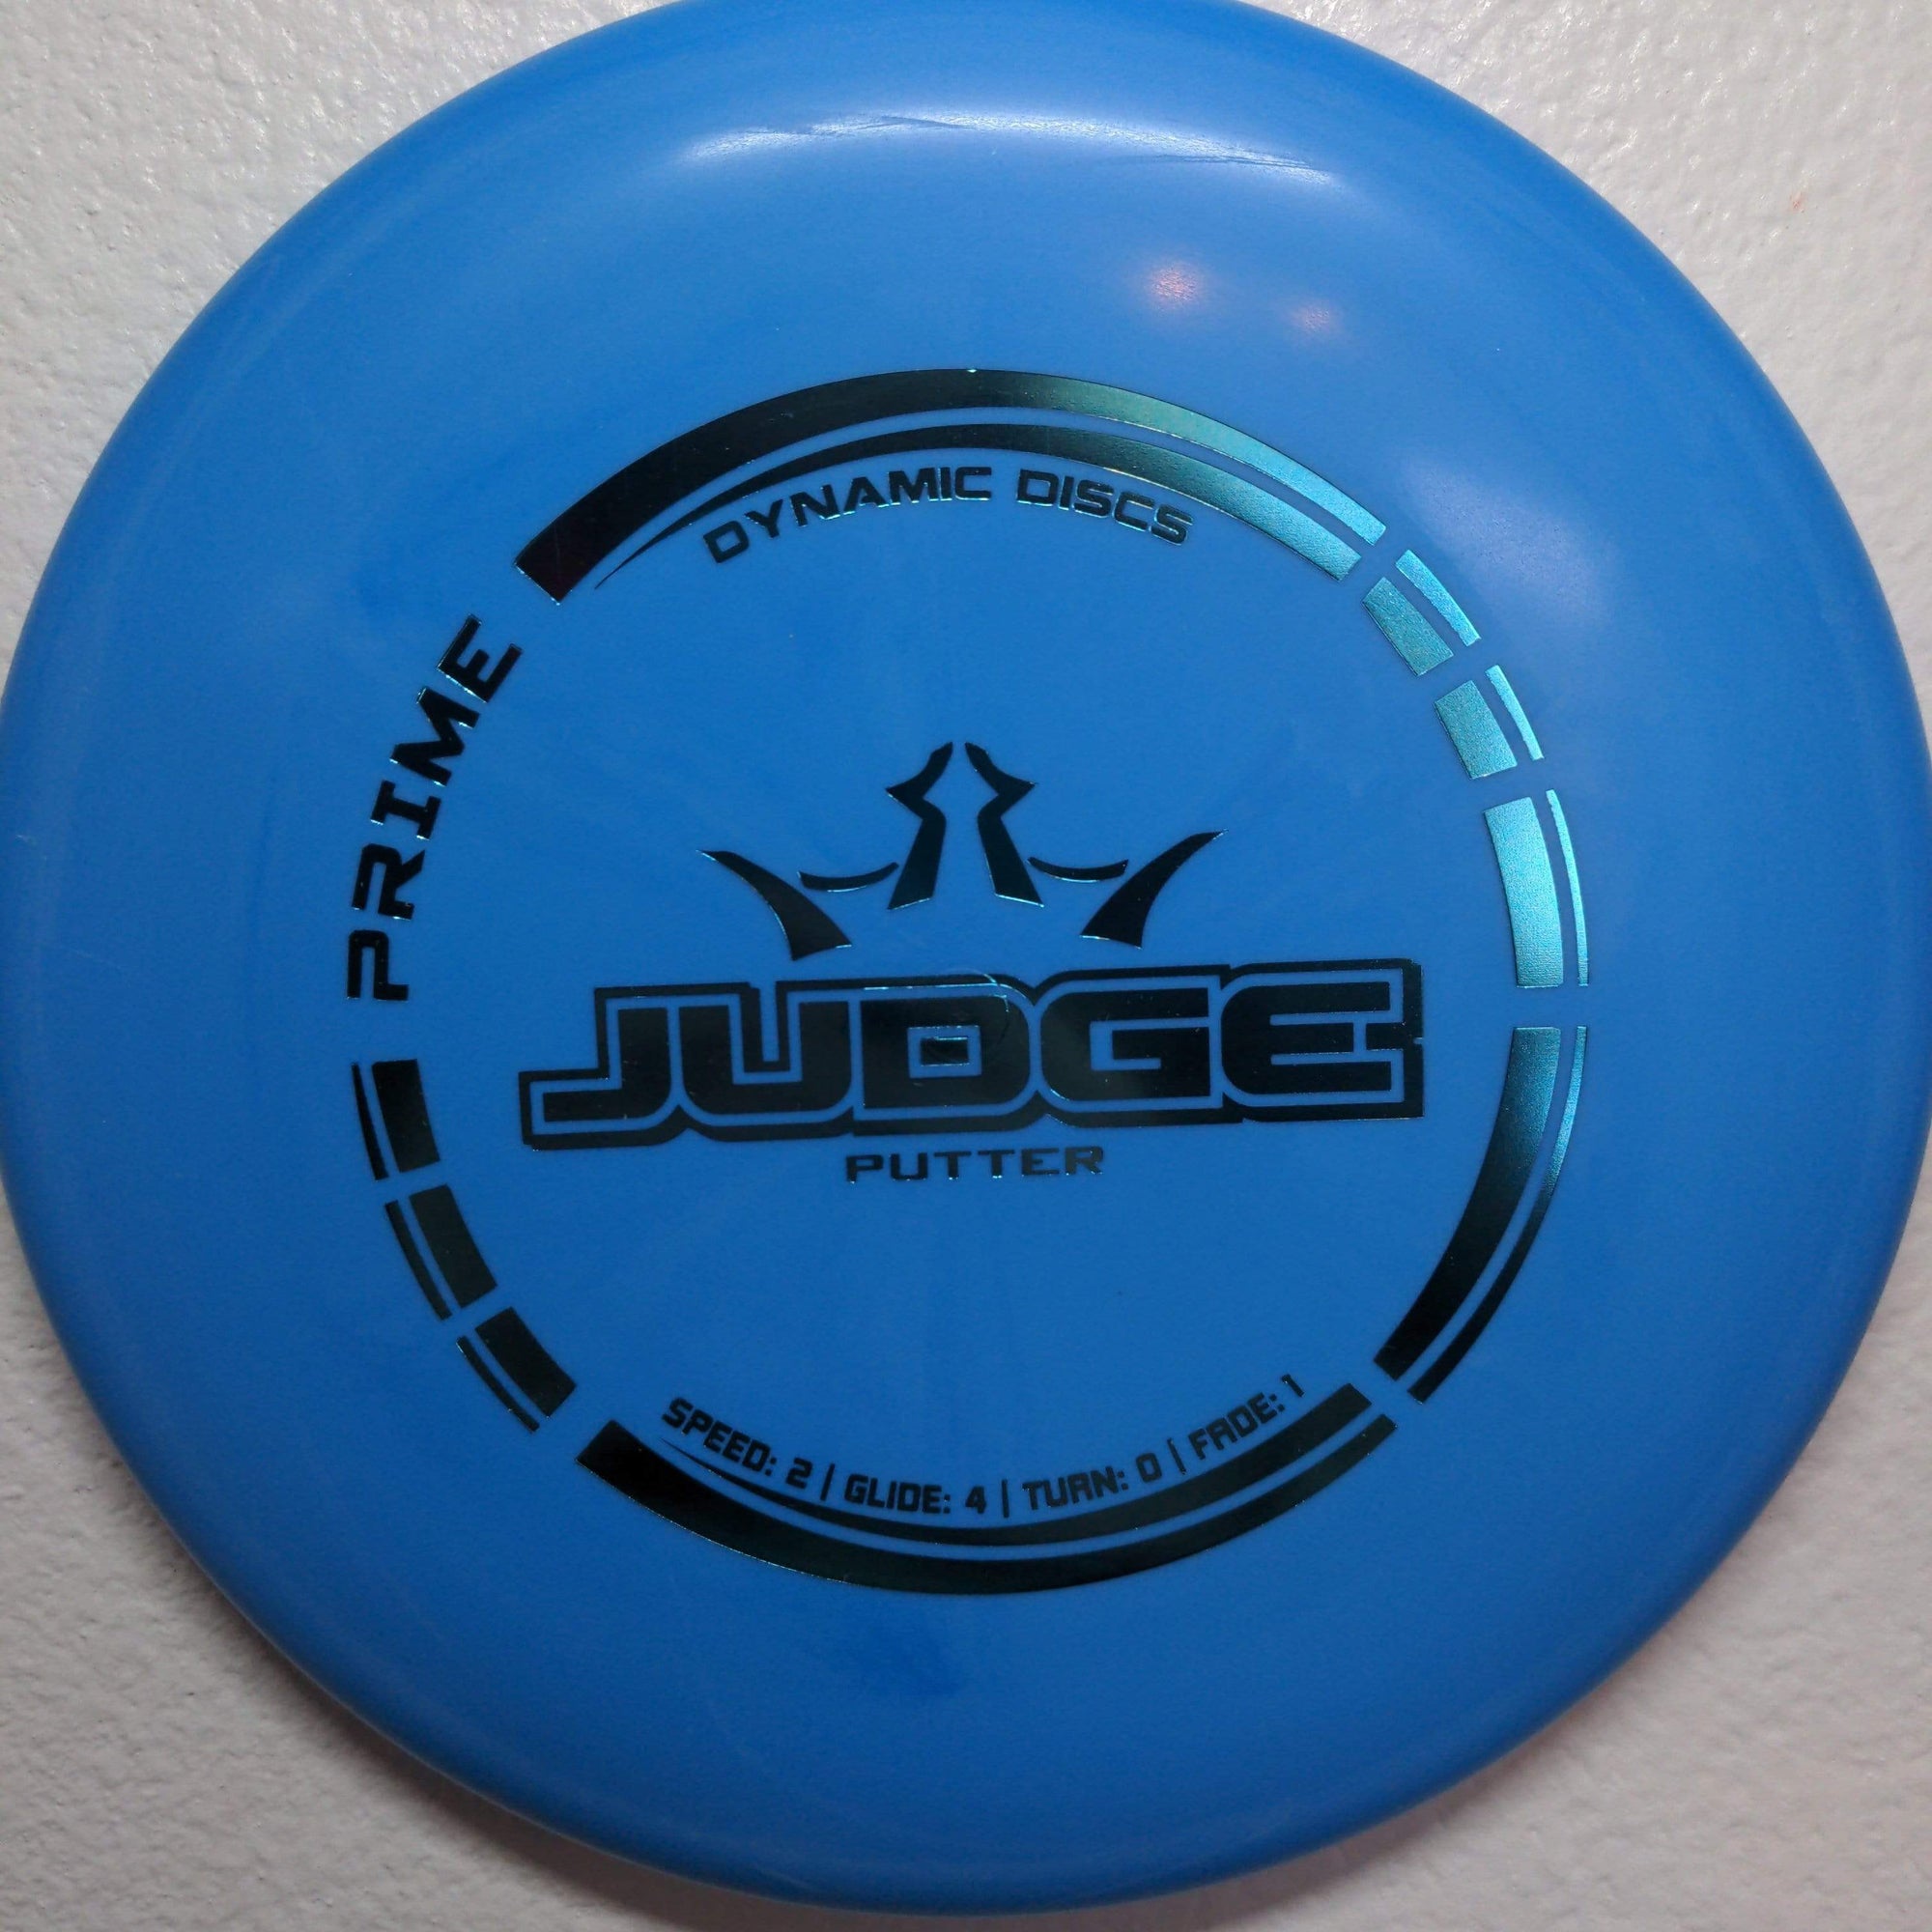 Dynamic Discs Putter Blue Teal Stamp Prime Judge 173-176g